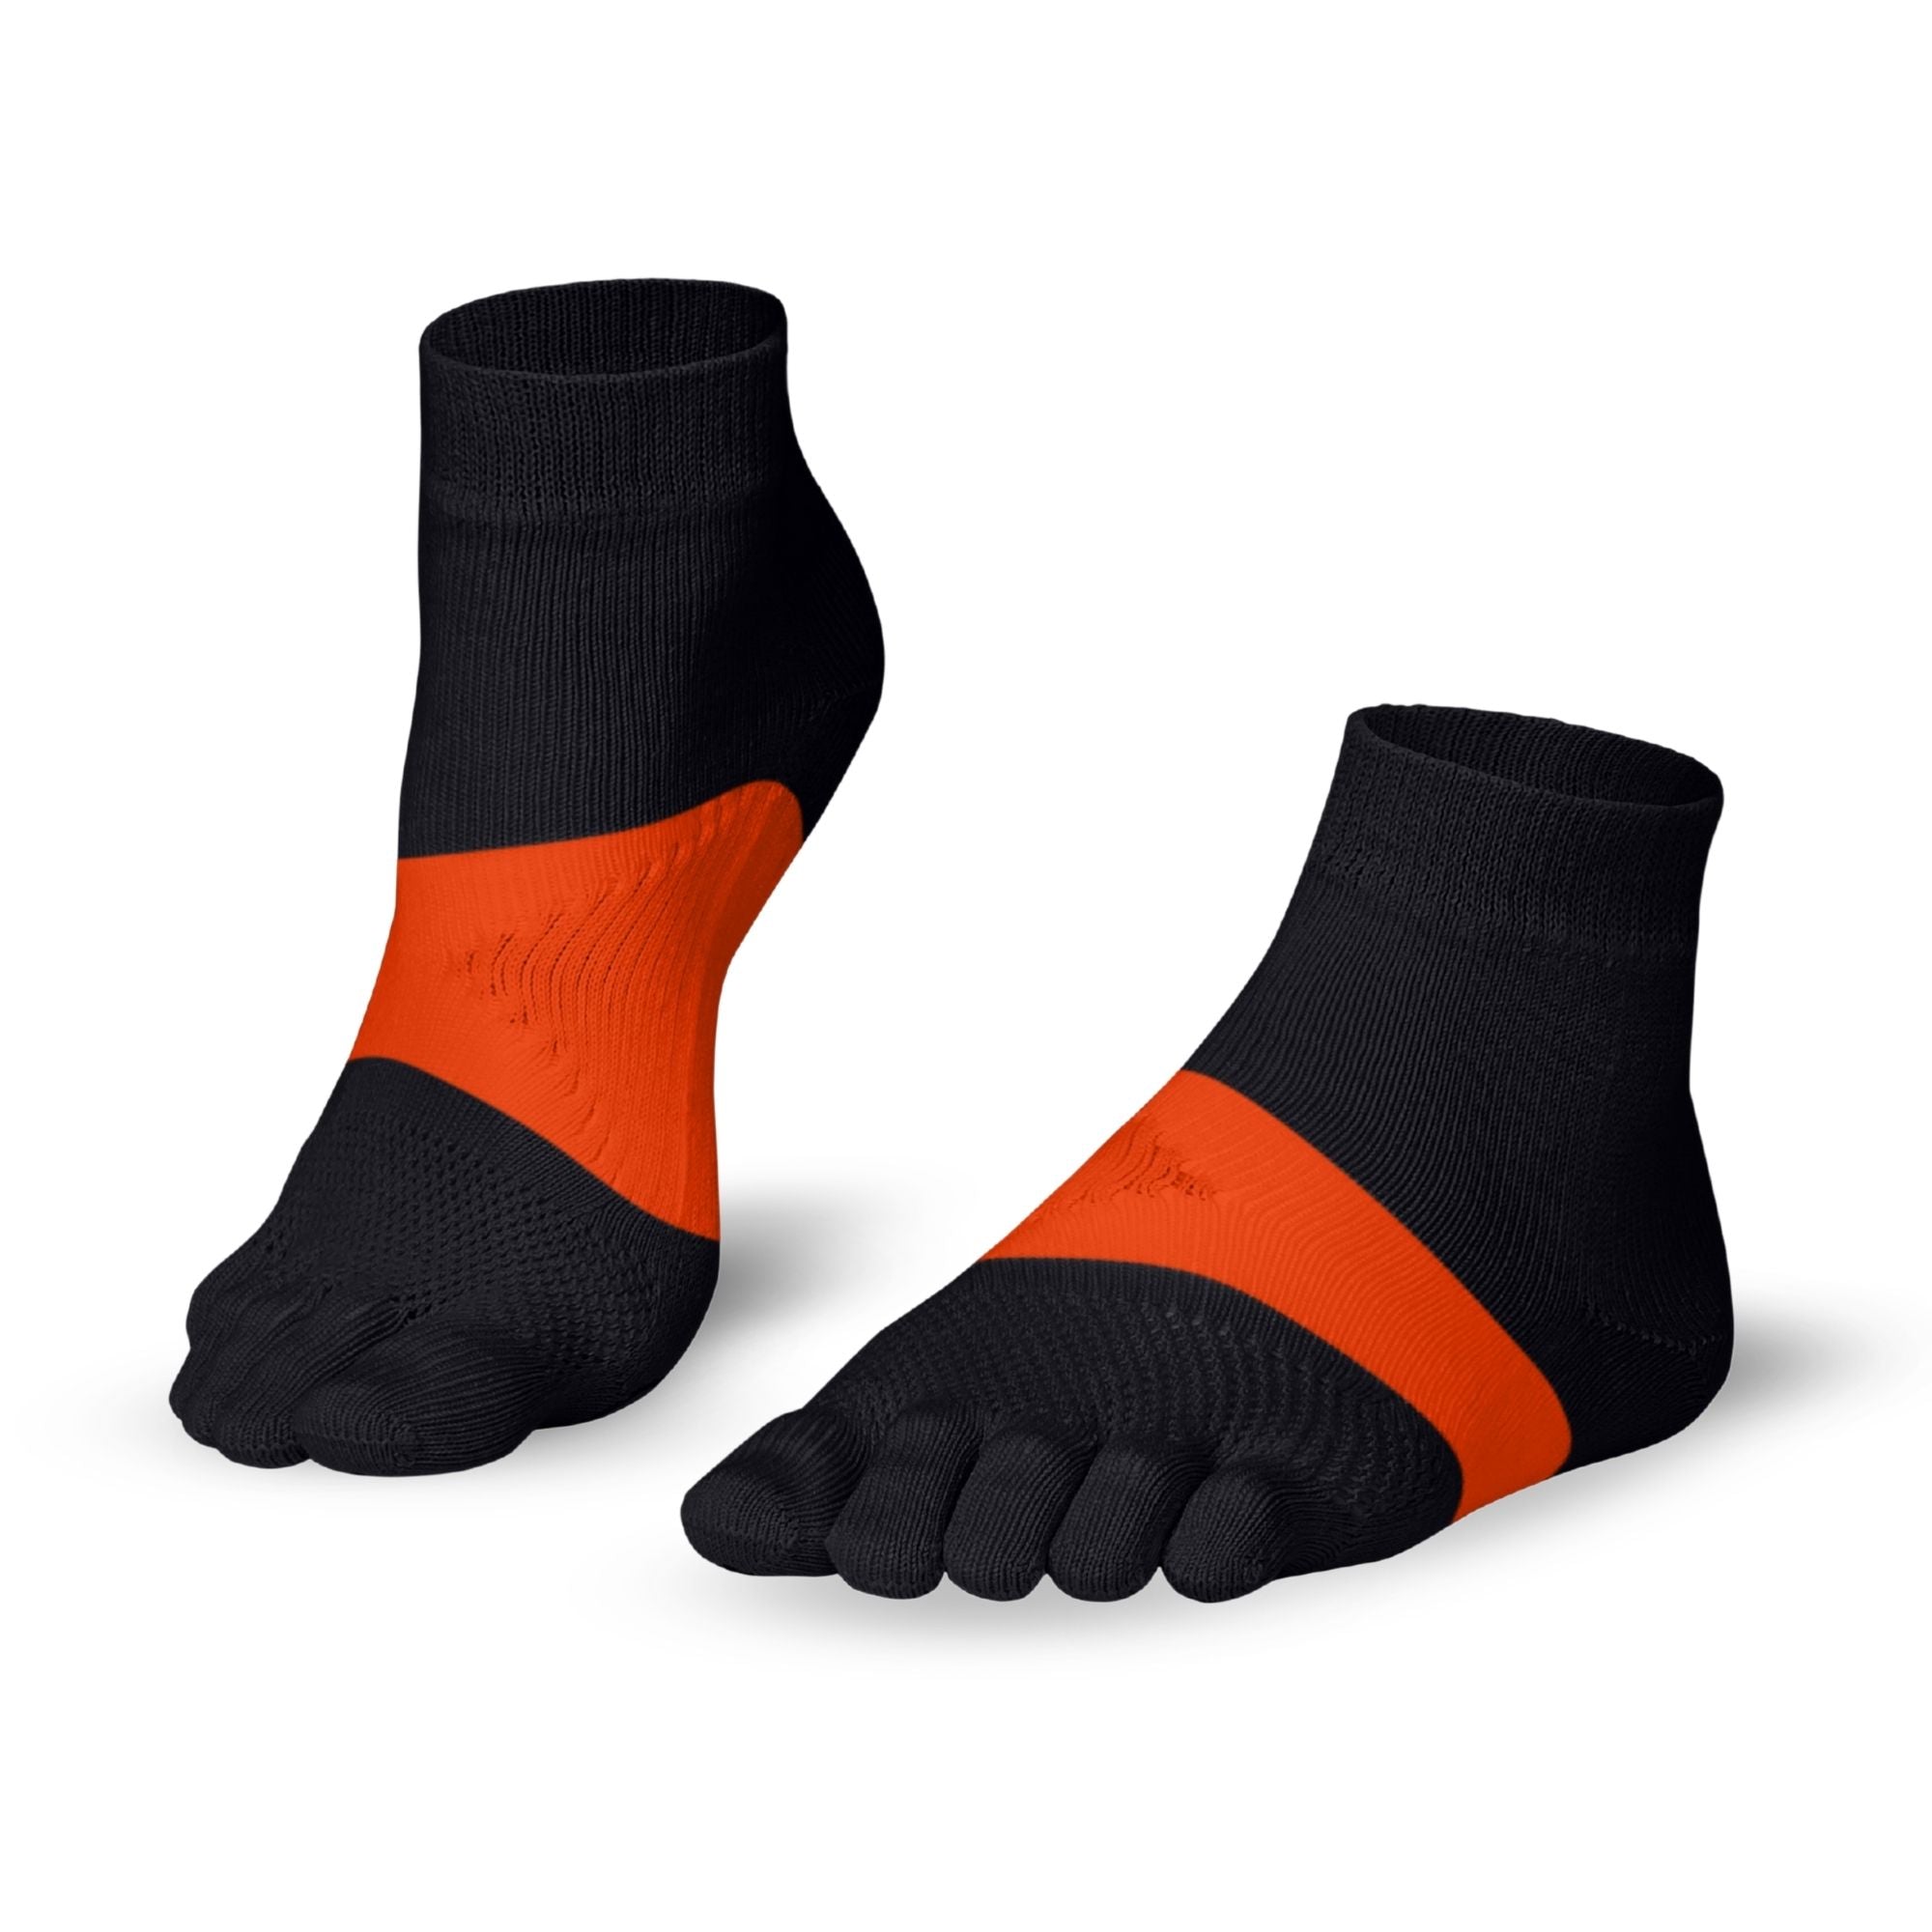 Knitido Marathon calze con dita per lo sport e la corsa su lunghe distanze - grigio / arancione